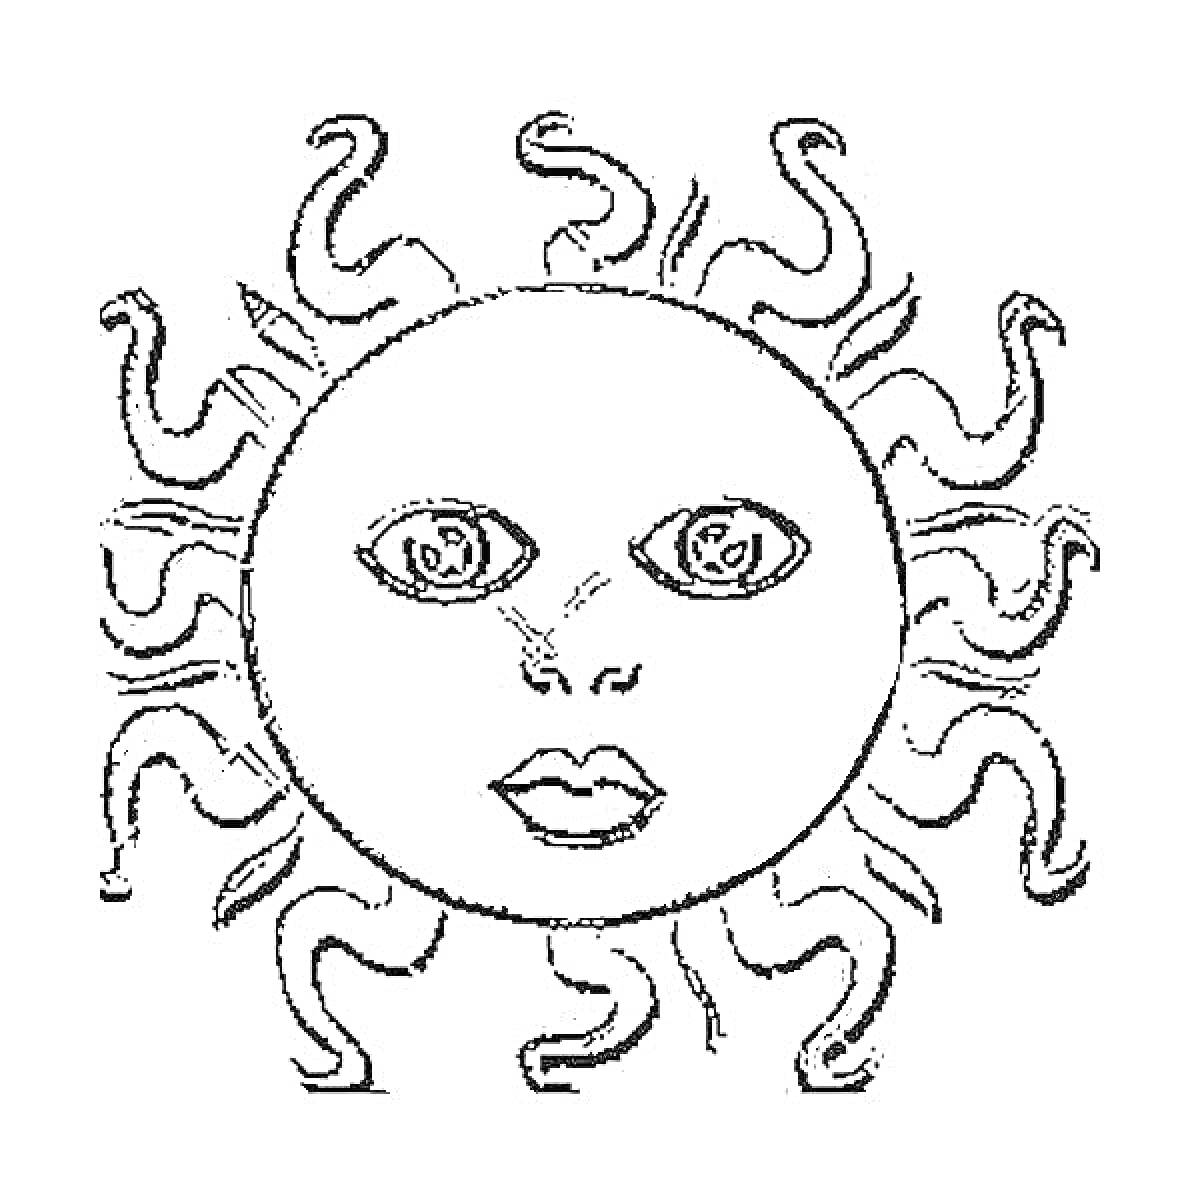 Солнышко с лицом - солнечные лучи в виде волн